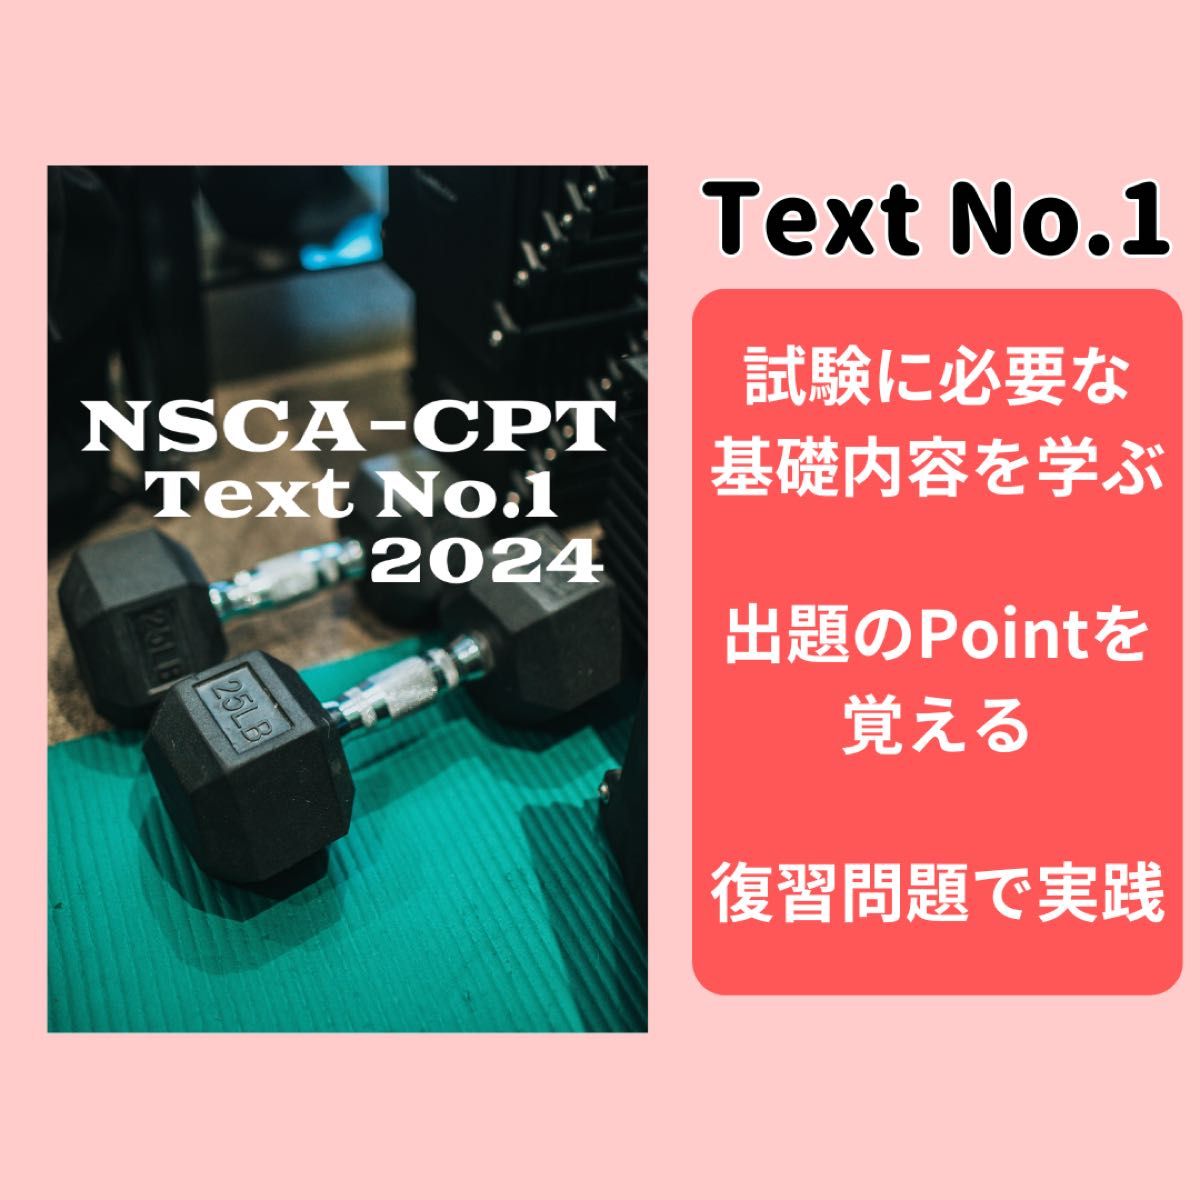 【2024年最新版】 過去問題有りNSCA-CPT対策問題集※即日配送